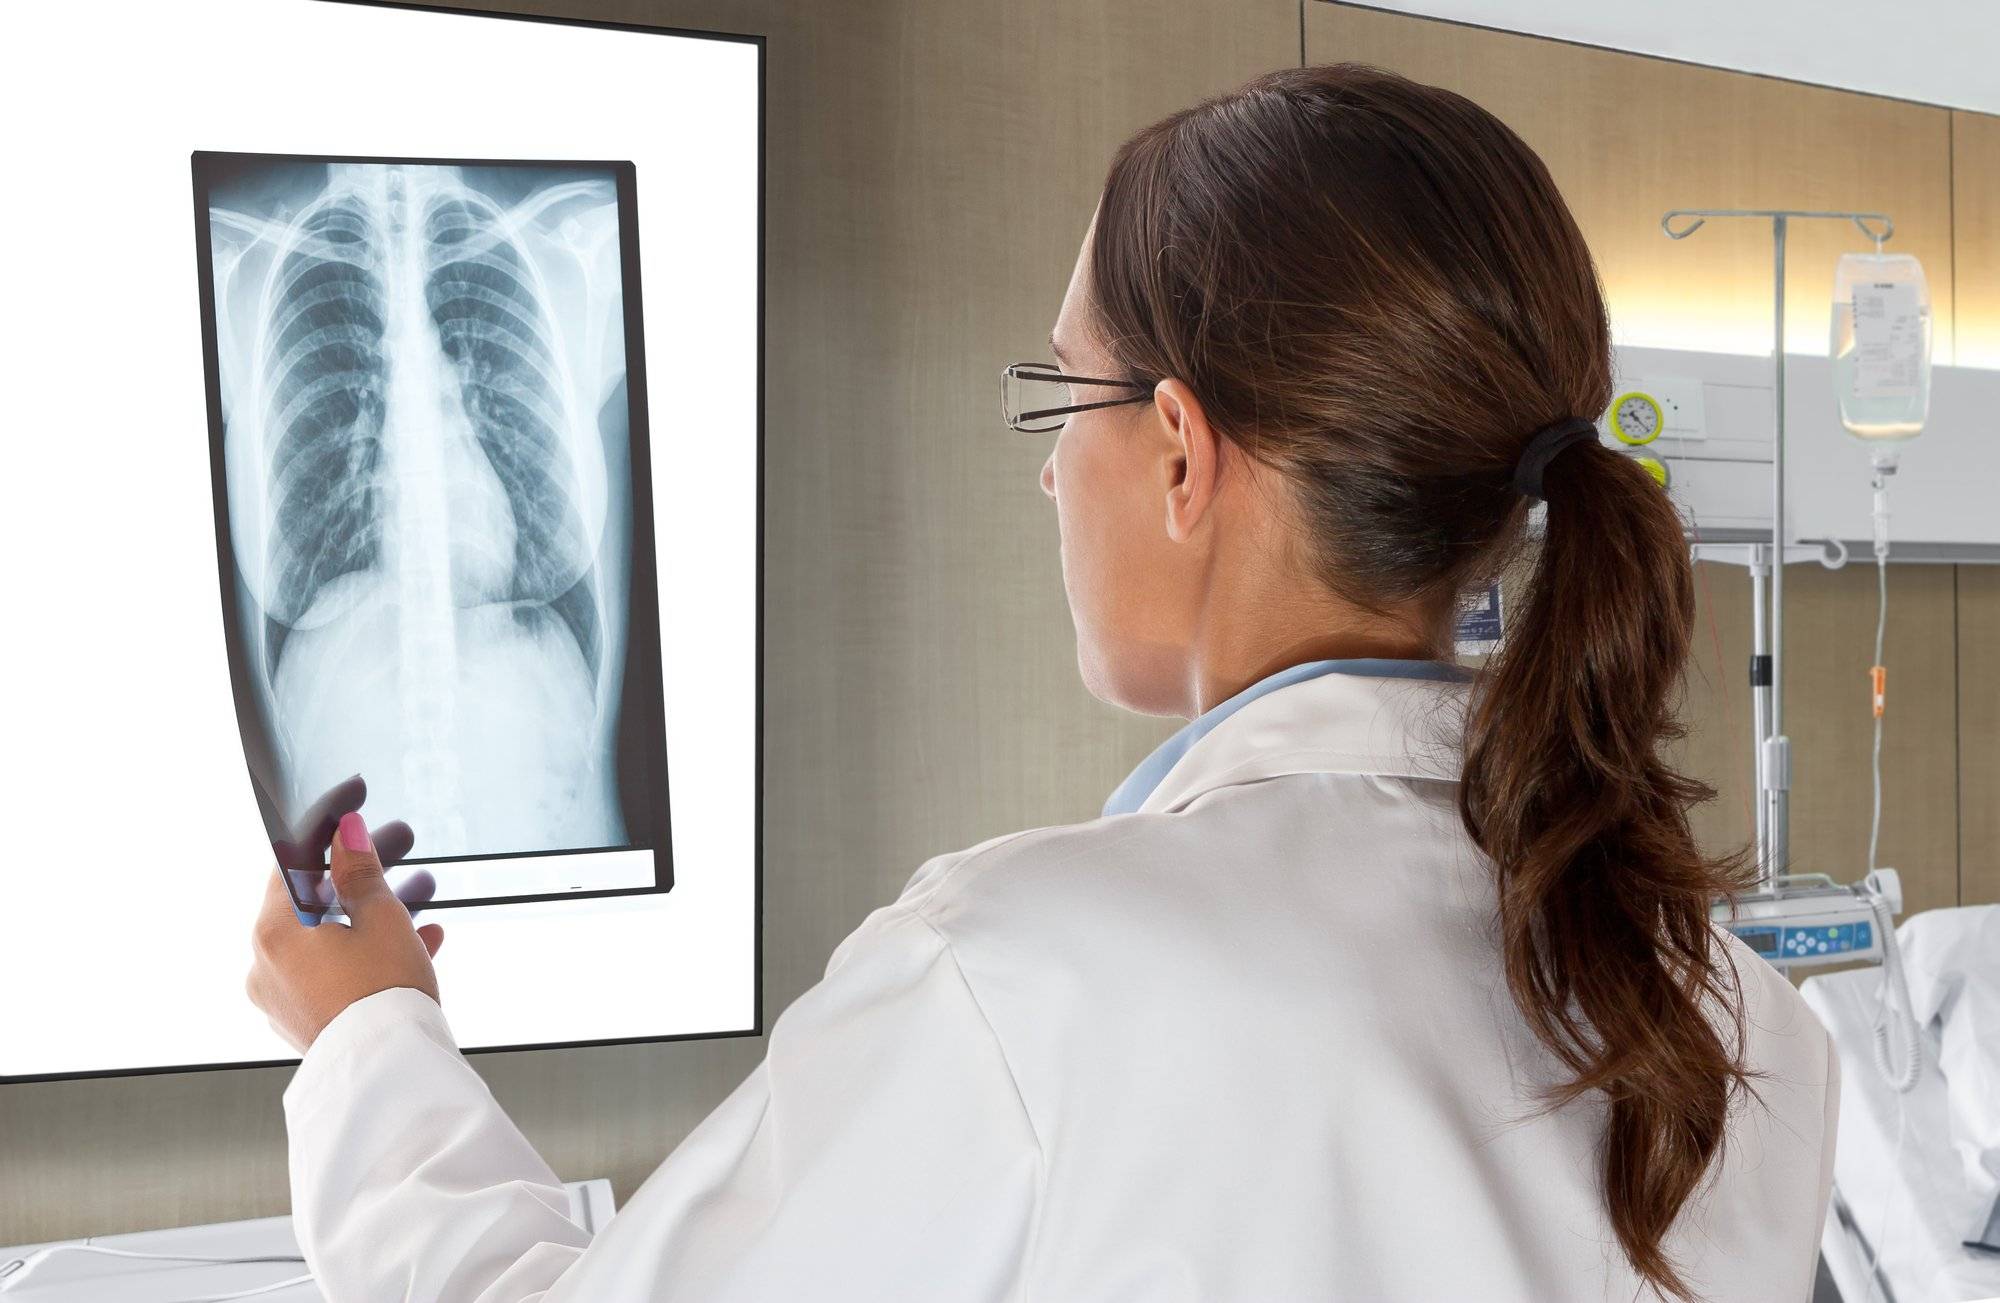 Доза облучения при рентгене, кт, мрт и узи: ну сколько можно? – напоправку